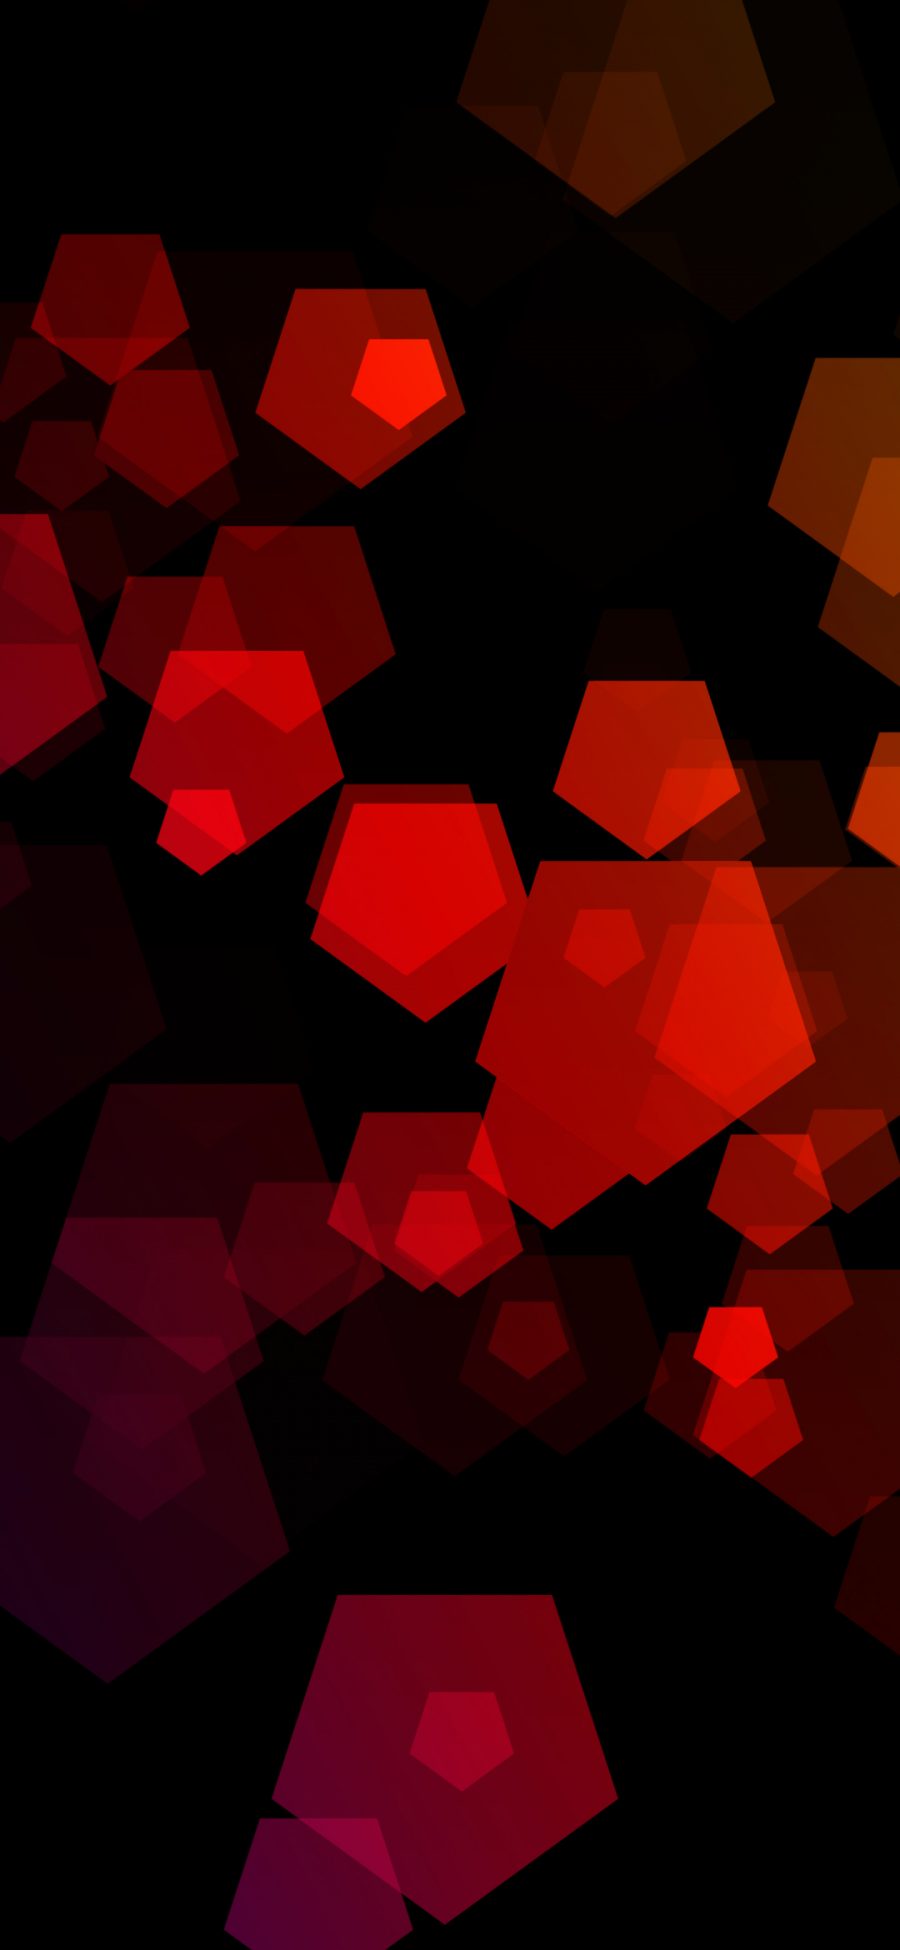 黑色 红色方块设计 壁纸(1080×2340)